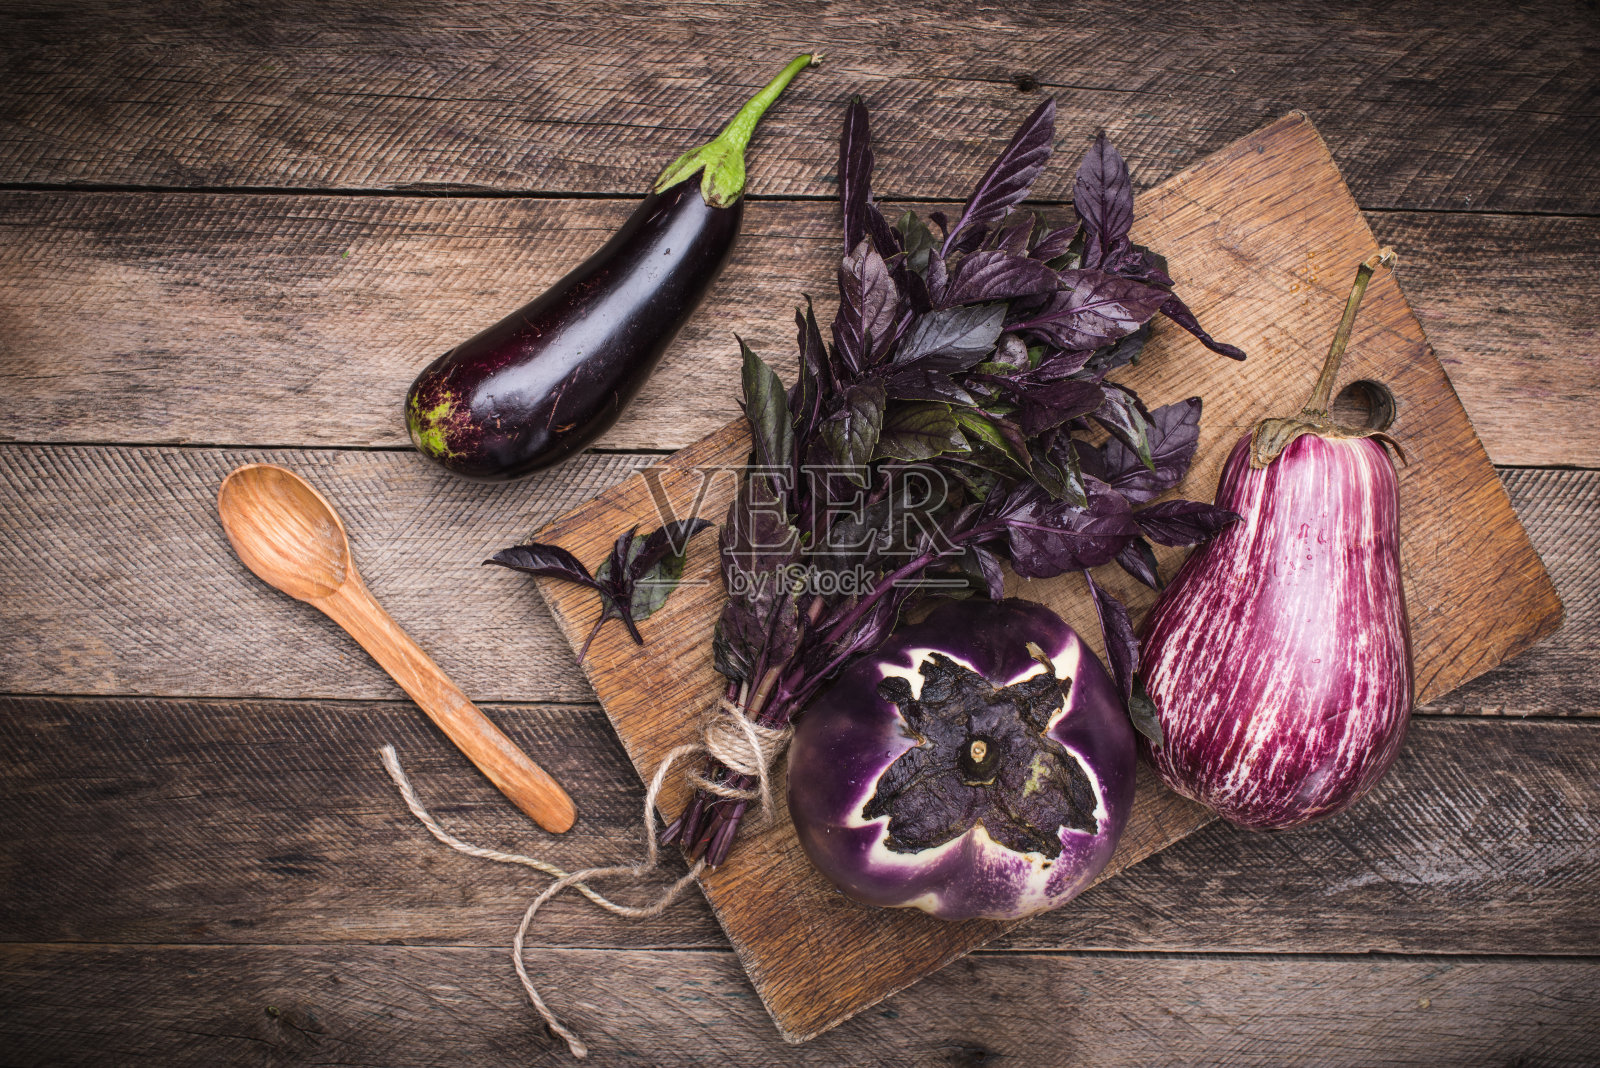 切菜板和木桌上放着茄子、罗勒和勺子。乡村风格和秋天的食物照片照片摄影图片